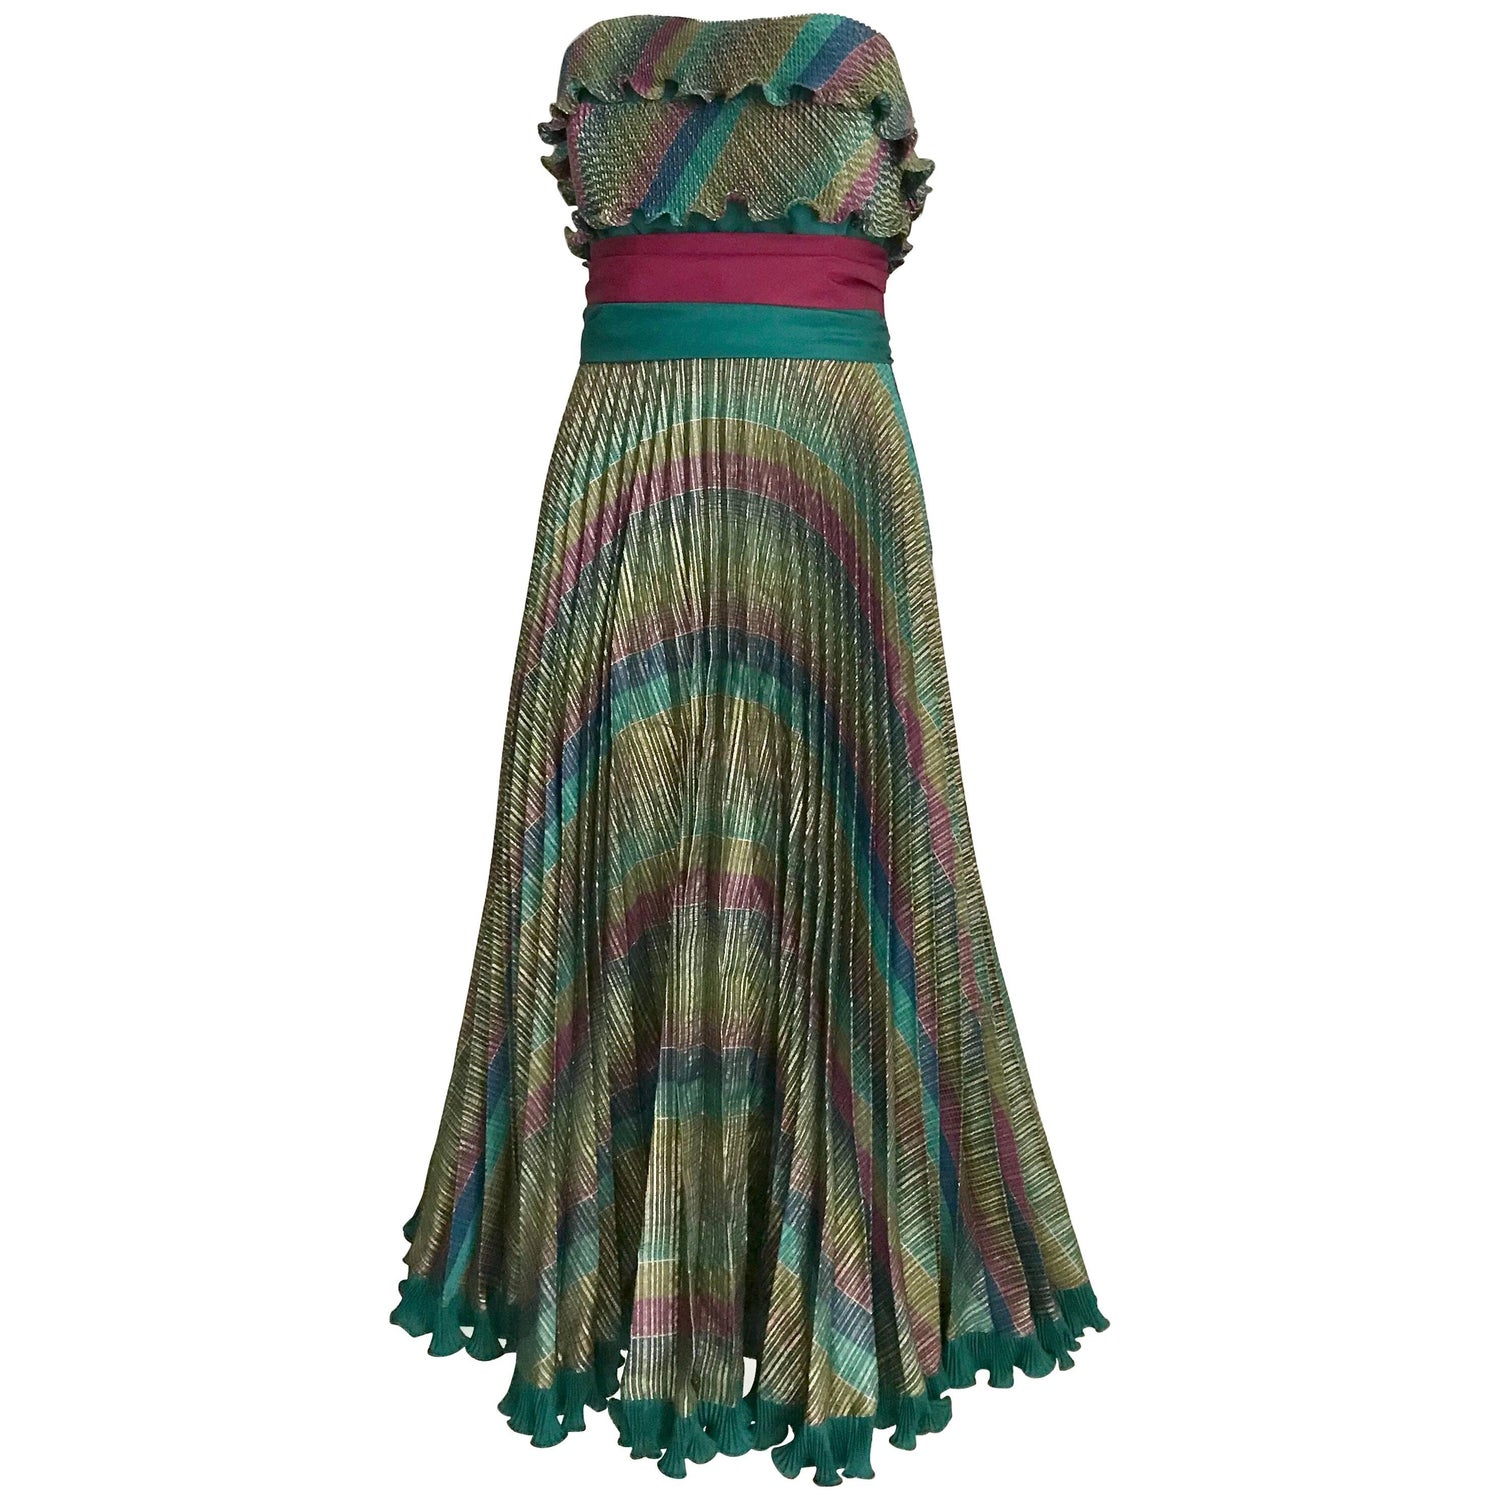 Vintage Frank Usher Fashion: Dresses & More - 22 For Sale at 1stdibs |  frank fantasy gown, frank usher 1950s dress, frank usher accessories